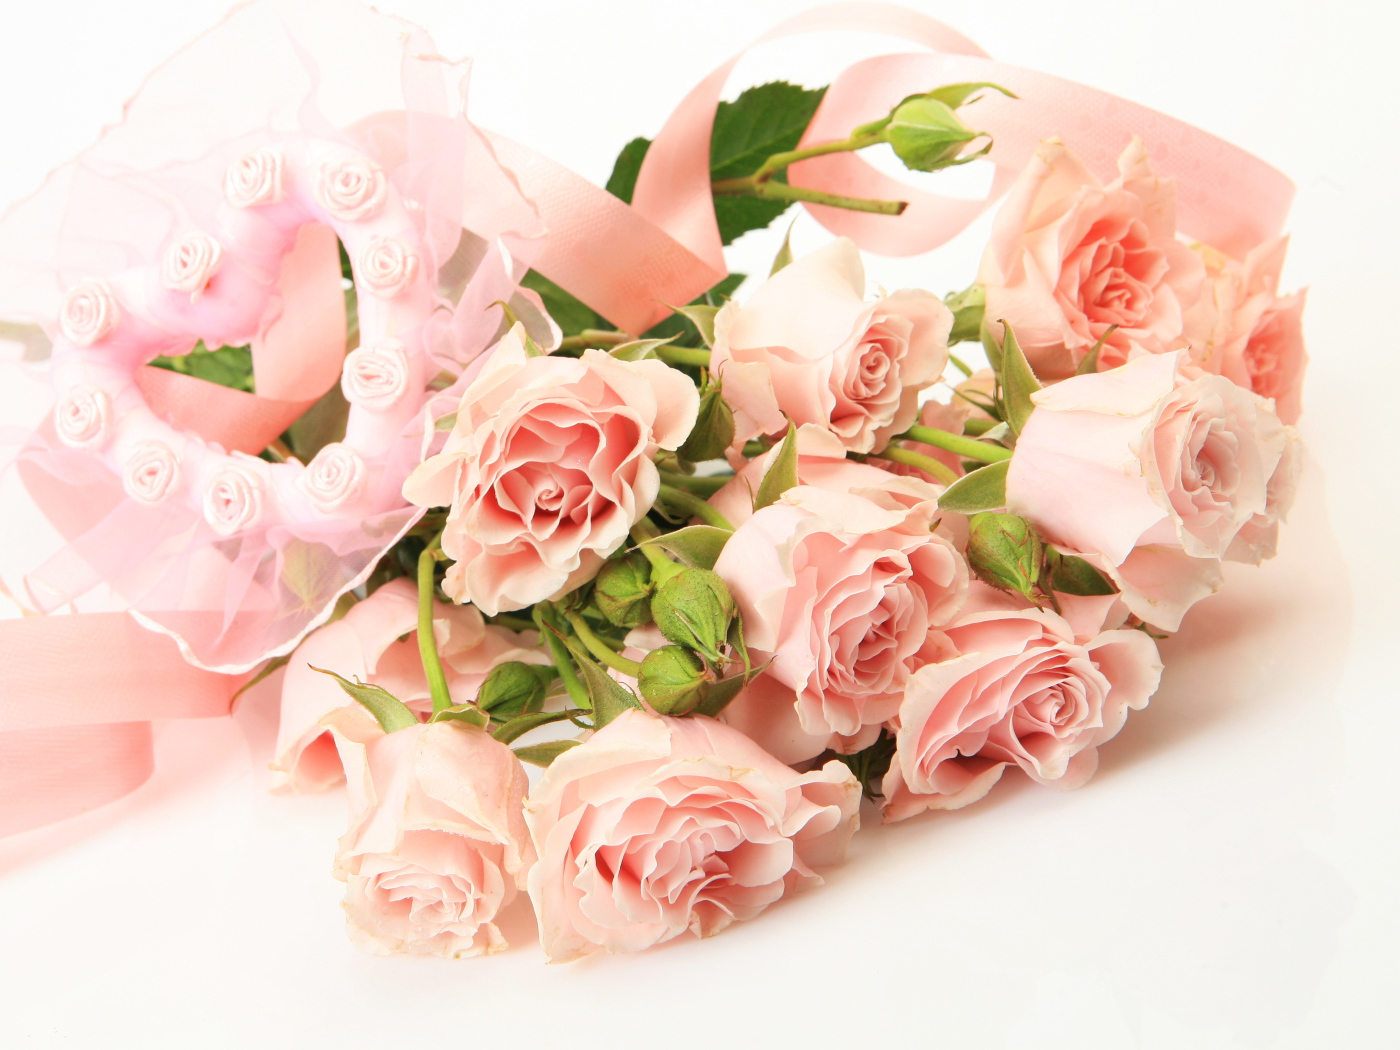 Красивый букет розовых роз с сердцем на белом фоне